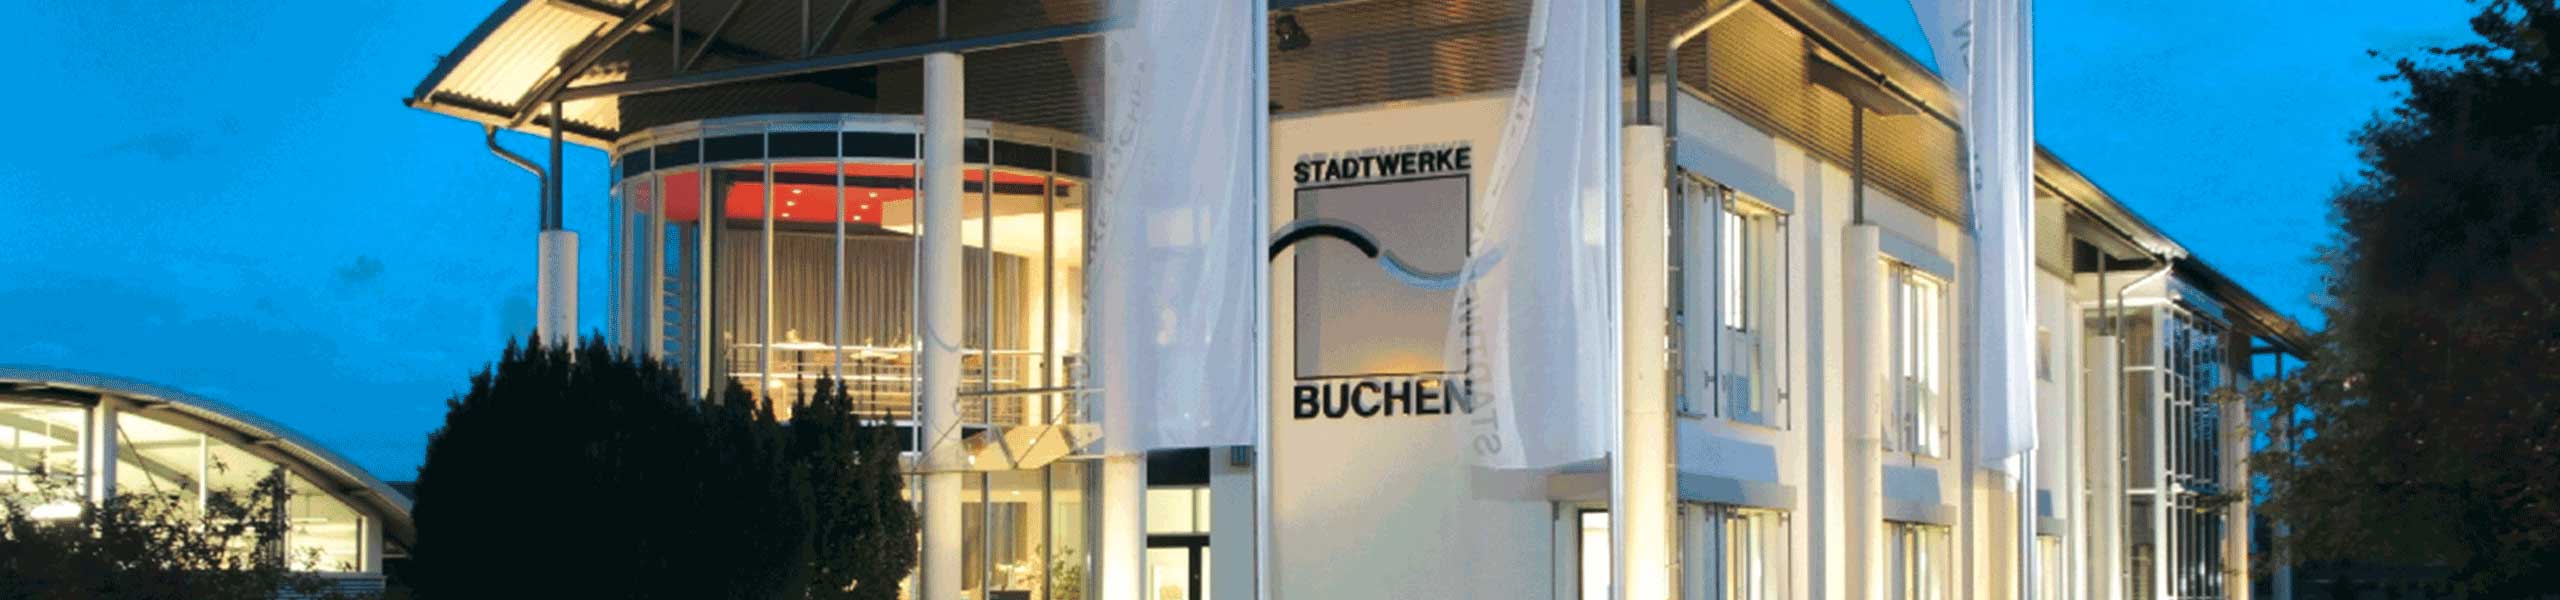 Stadtwerke Buchen GmbH & Co KG - Die SWB